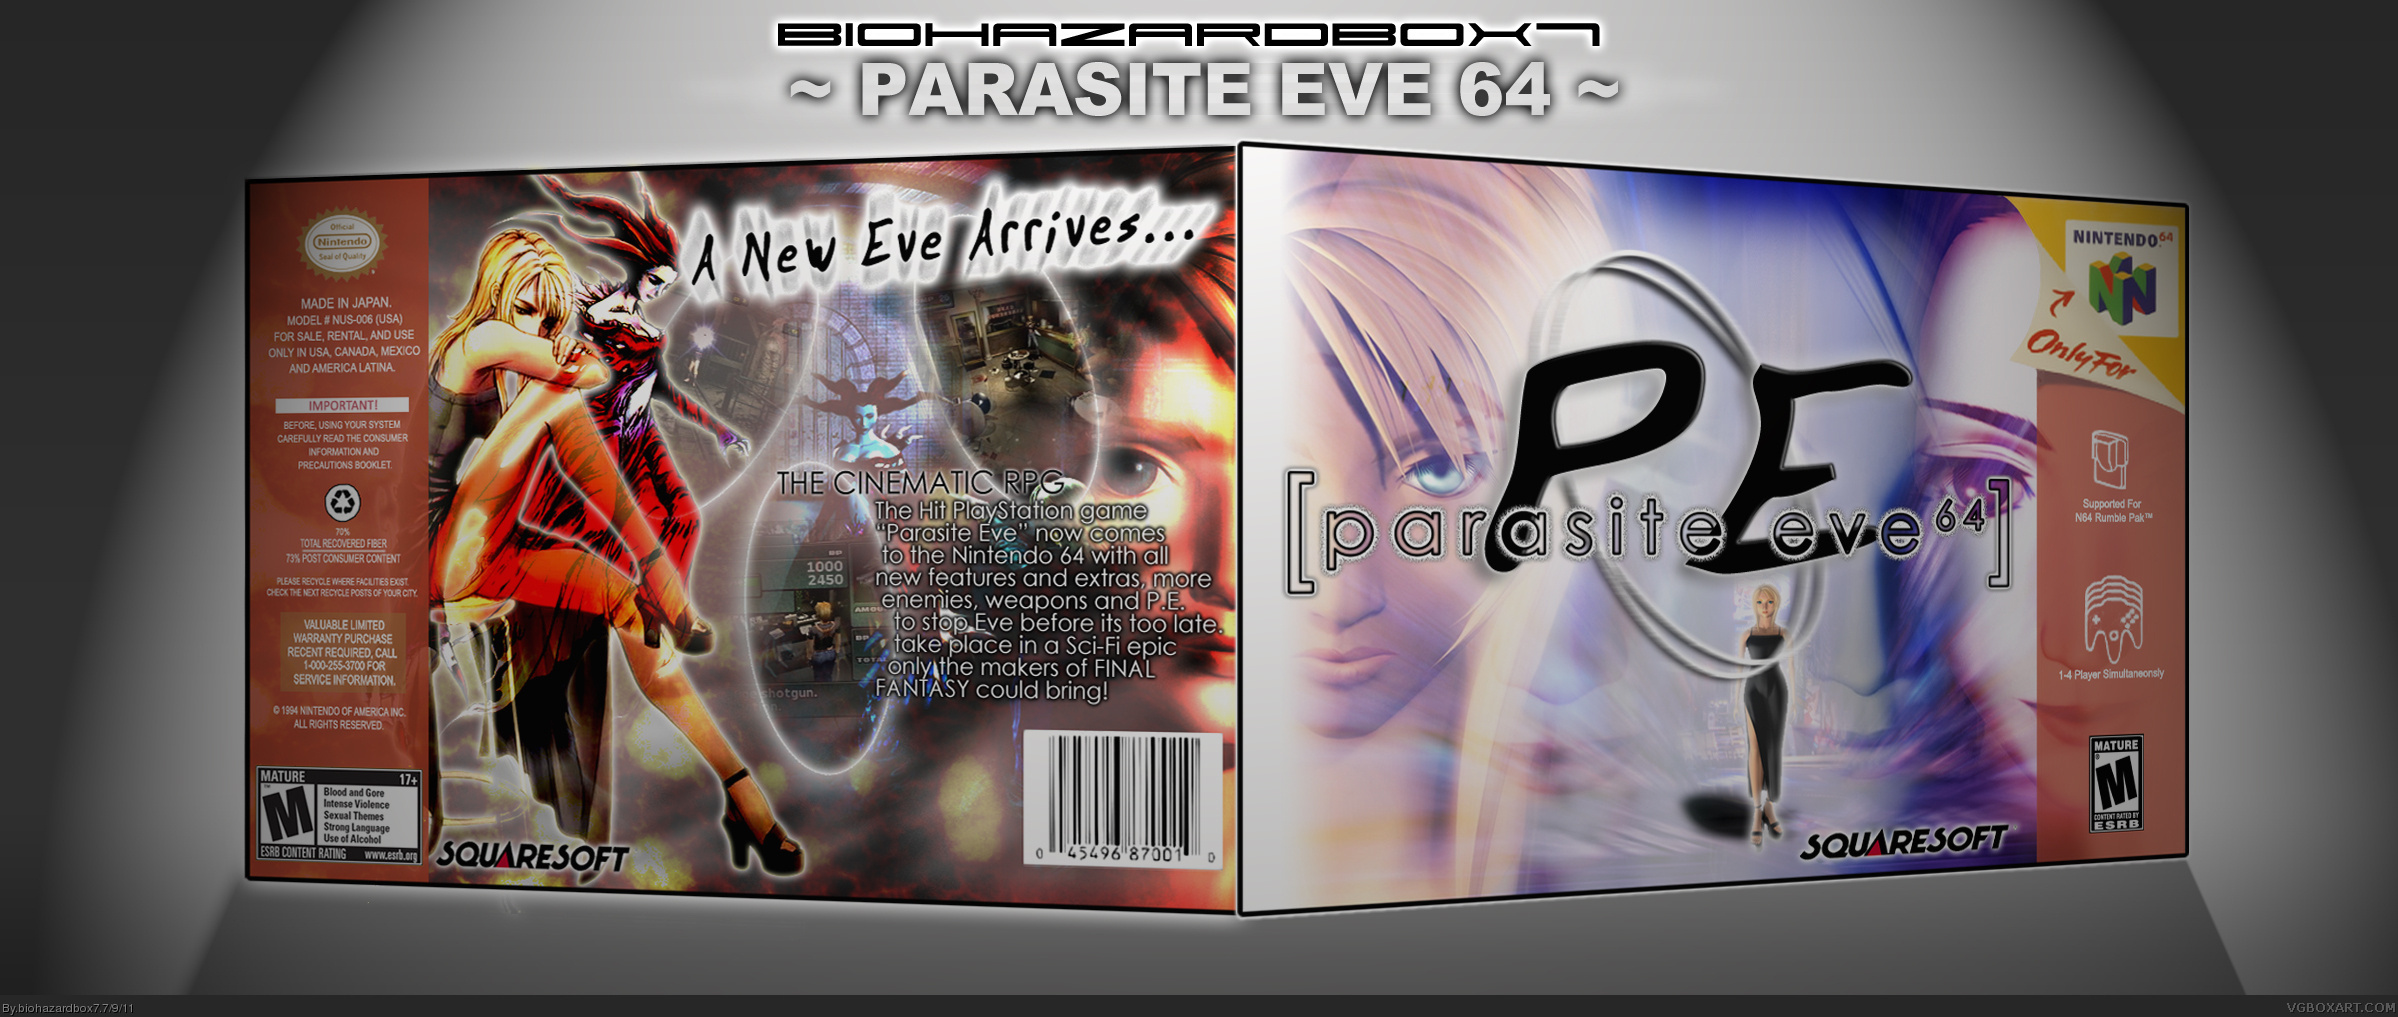 Parasite Eve 64 box cover